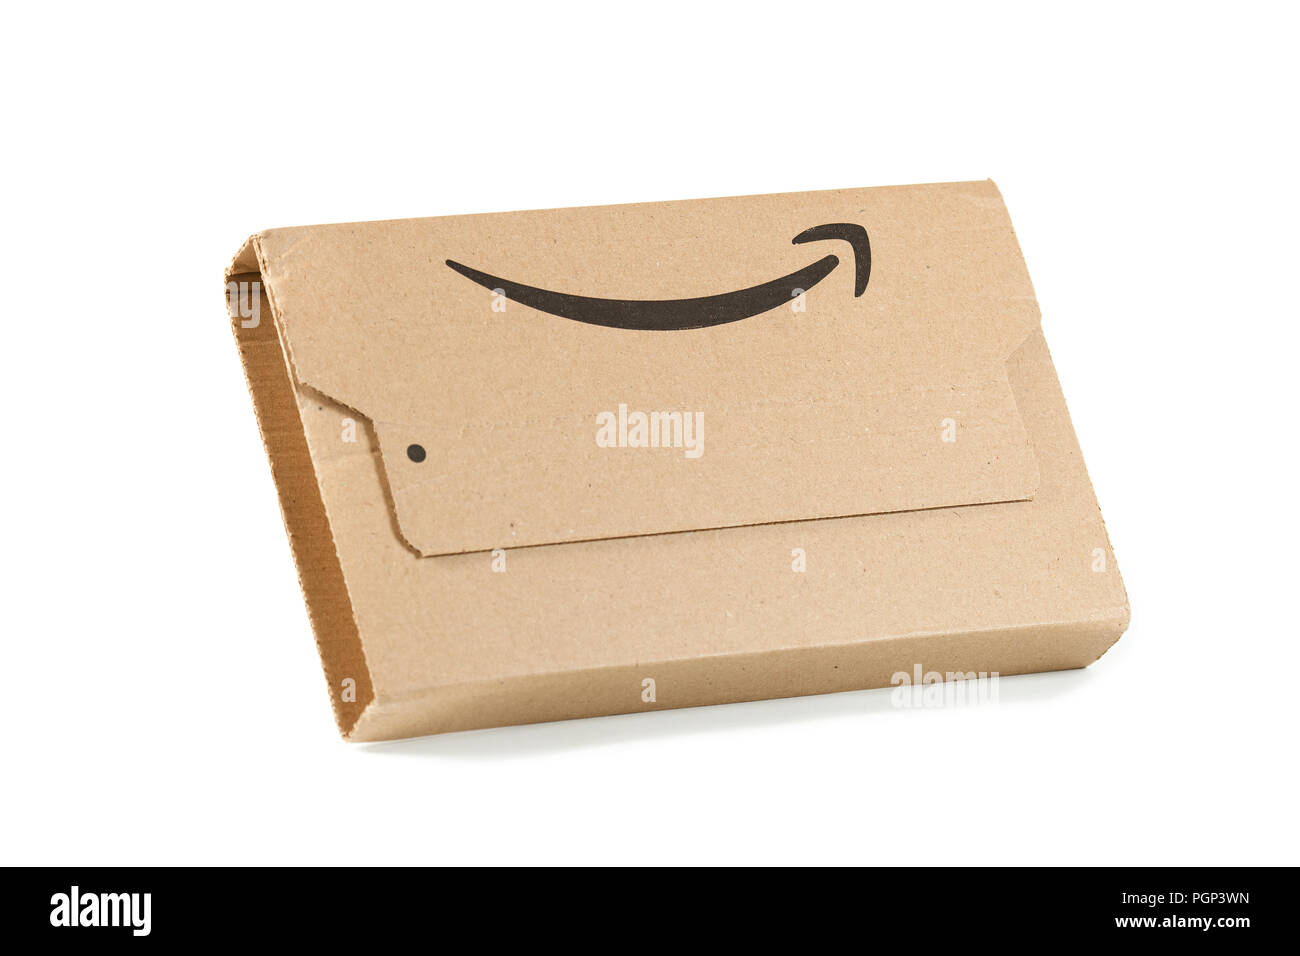 Amazon Paket mit Logo auf weißem Hintergrund Stockfotografie - Alamy